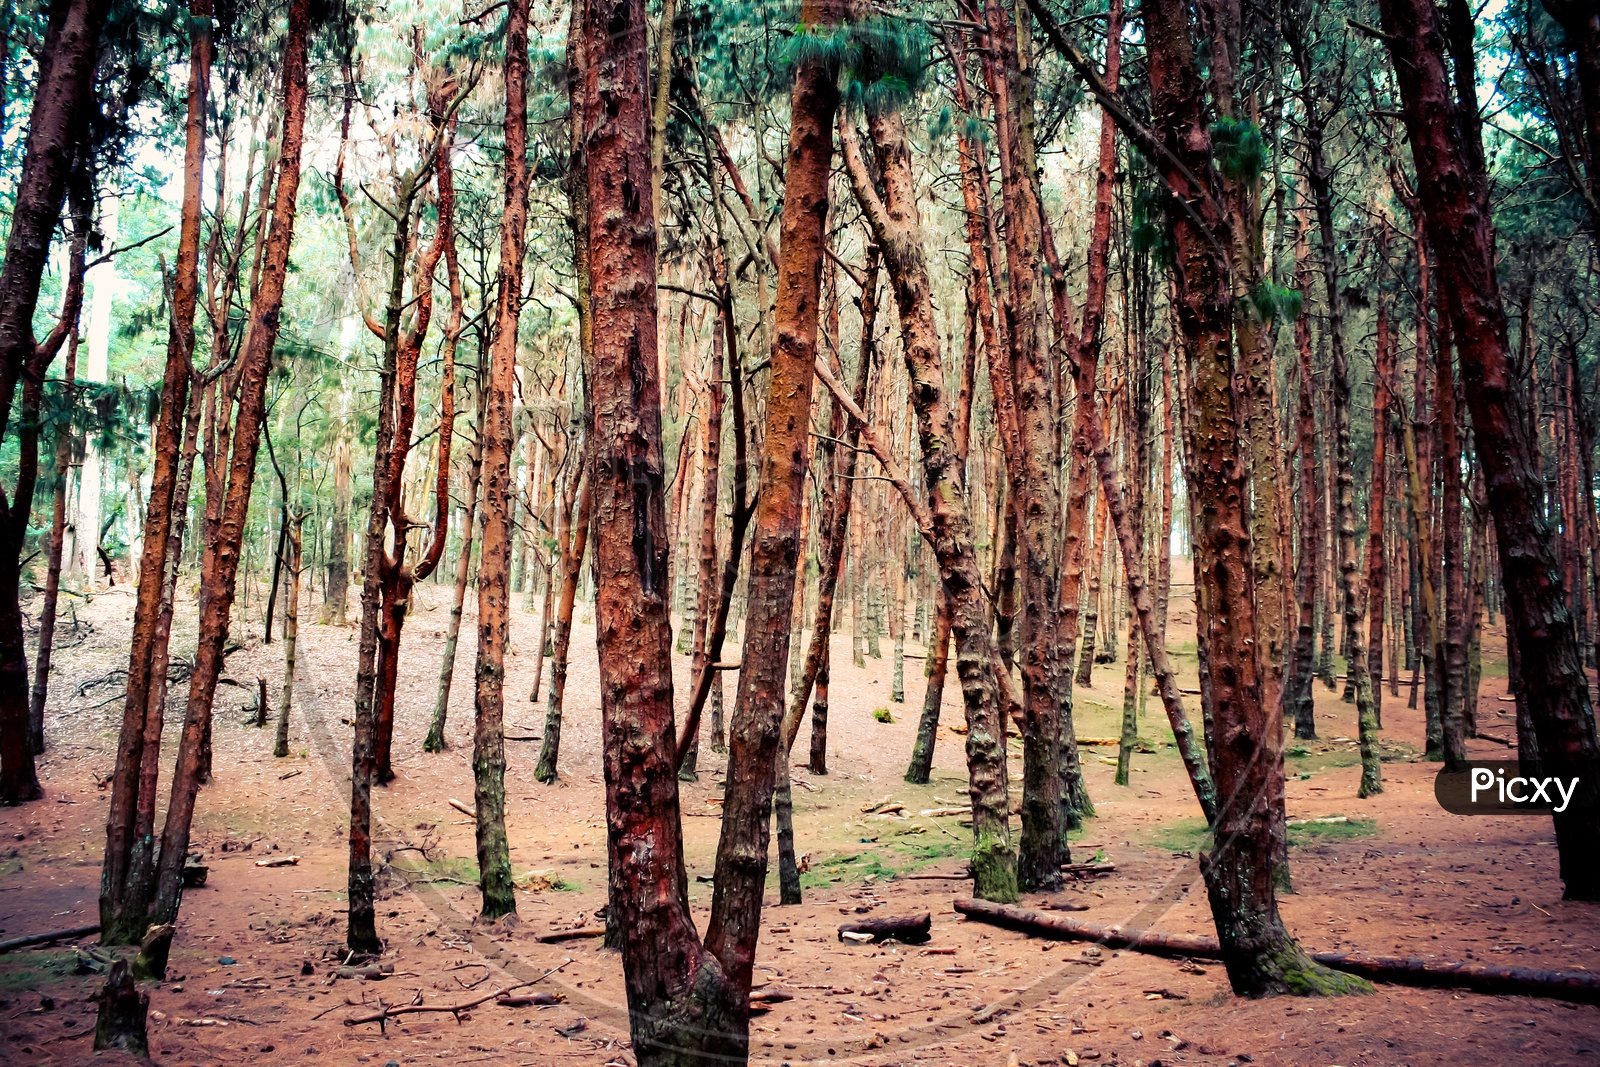 Pine Forest kodaikanal